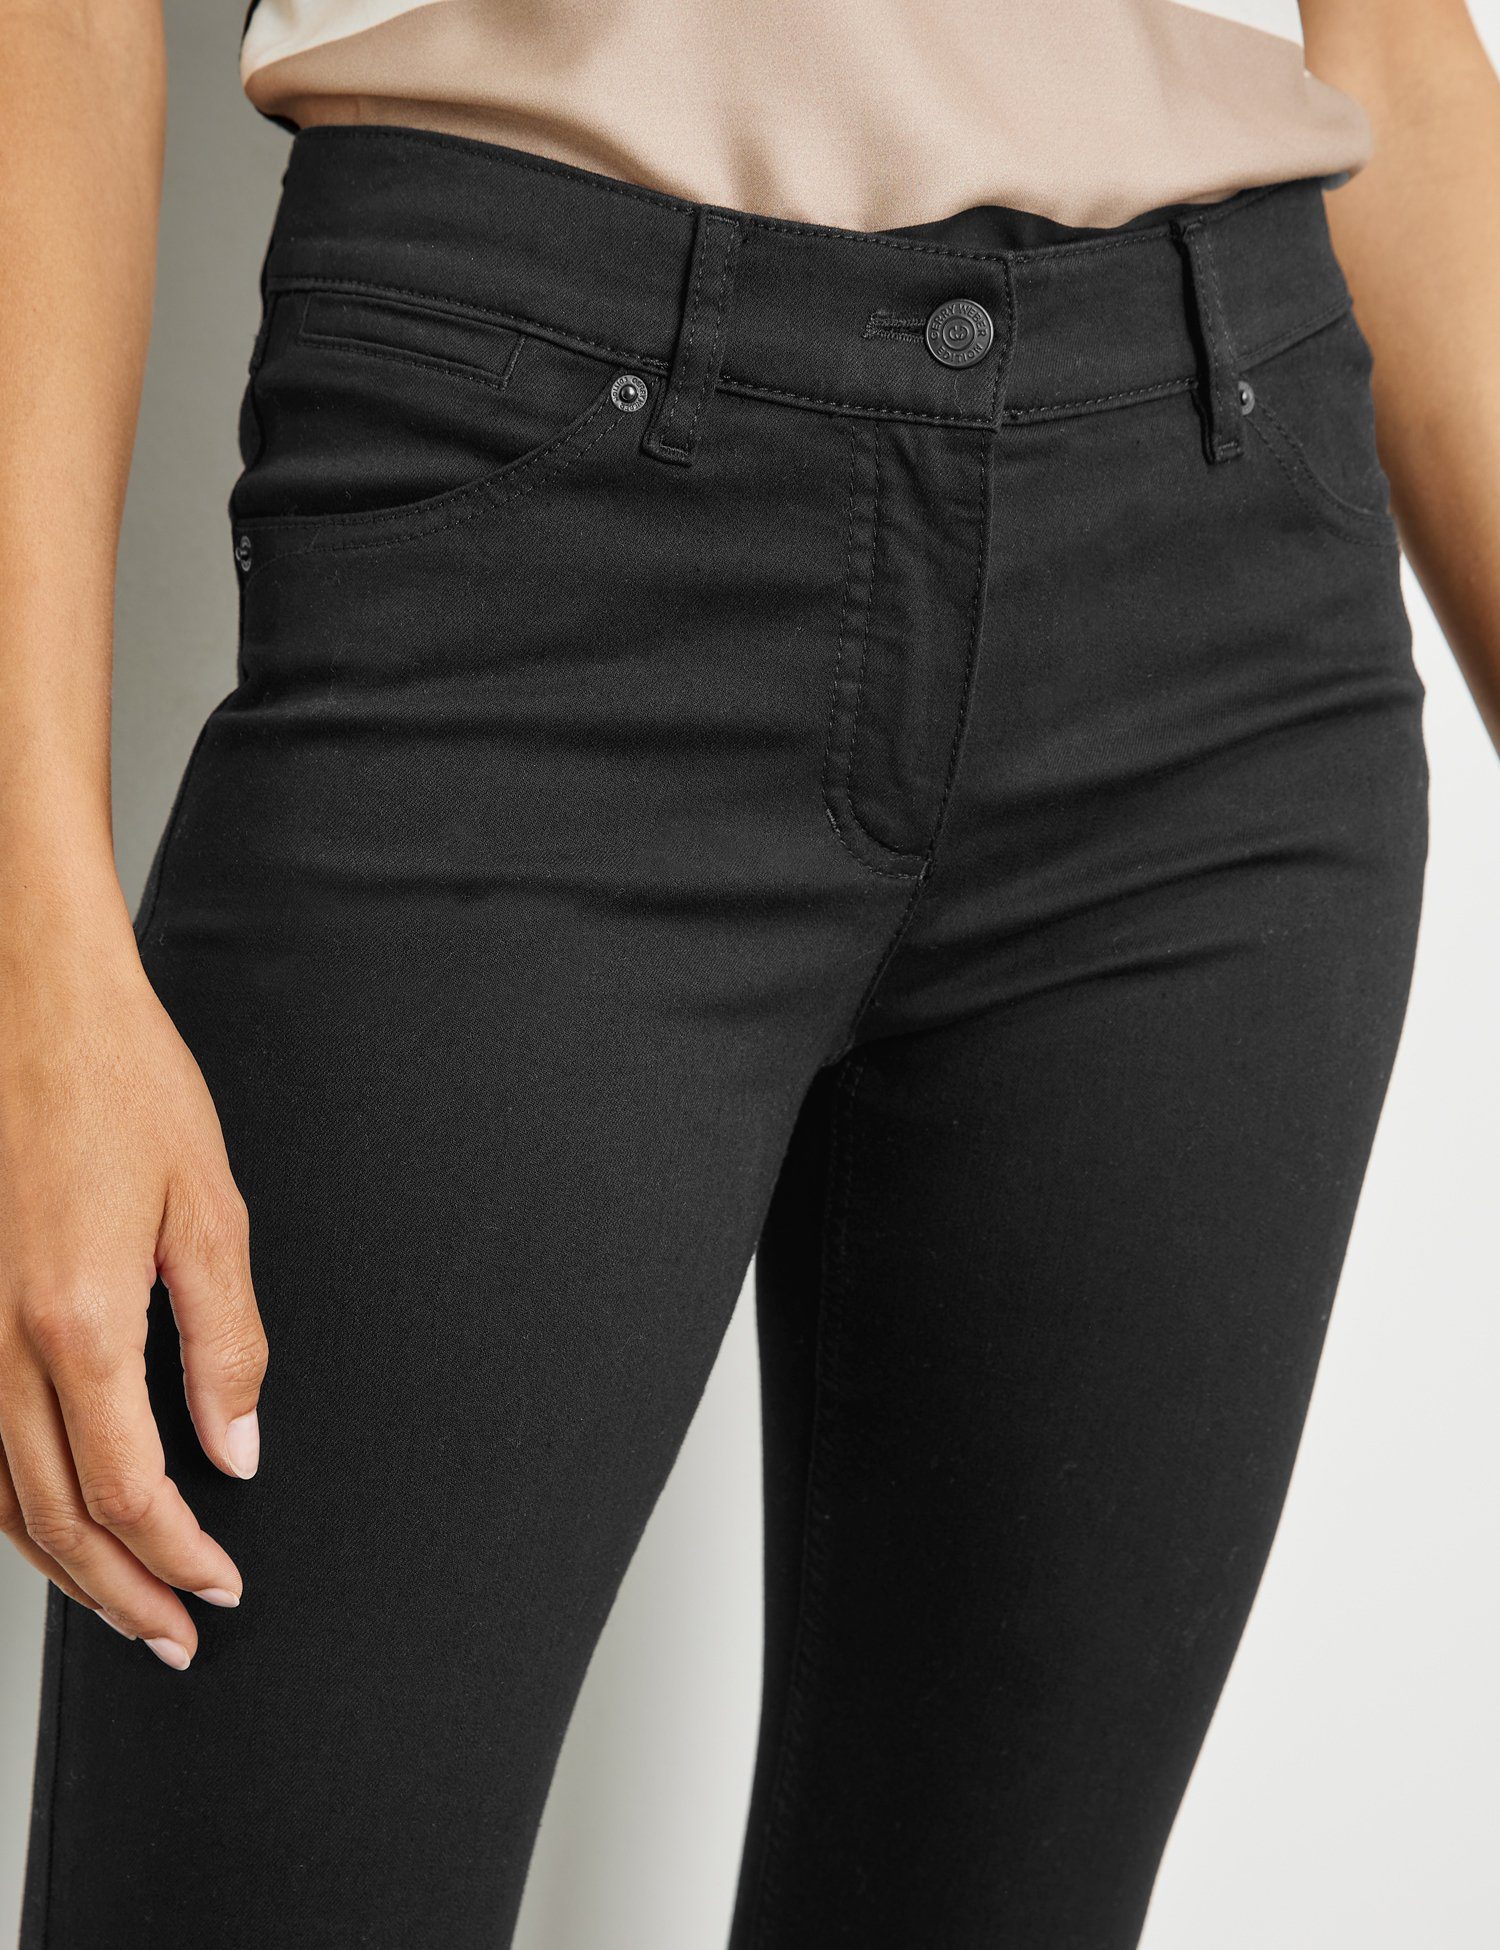 GERRY WEBER Best4me Jeans Black Black 5-Pocket Skinny Stretch-Jeans Denim